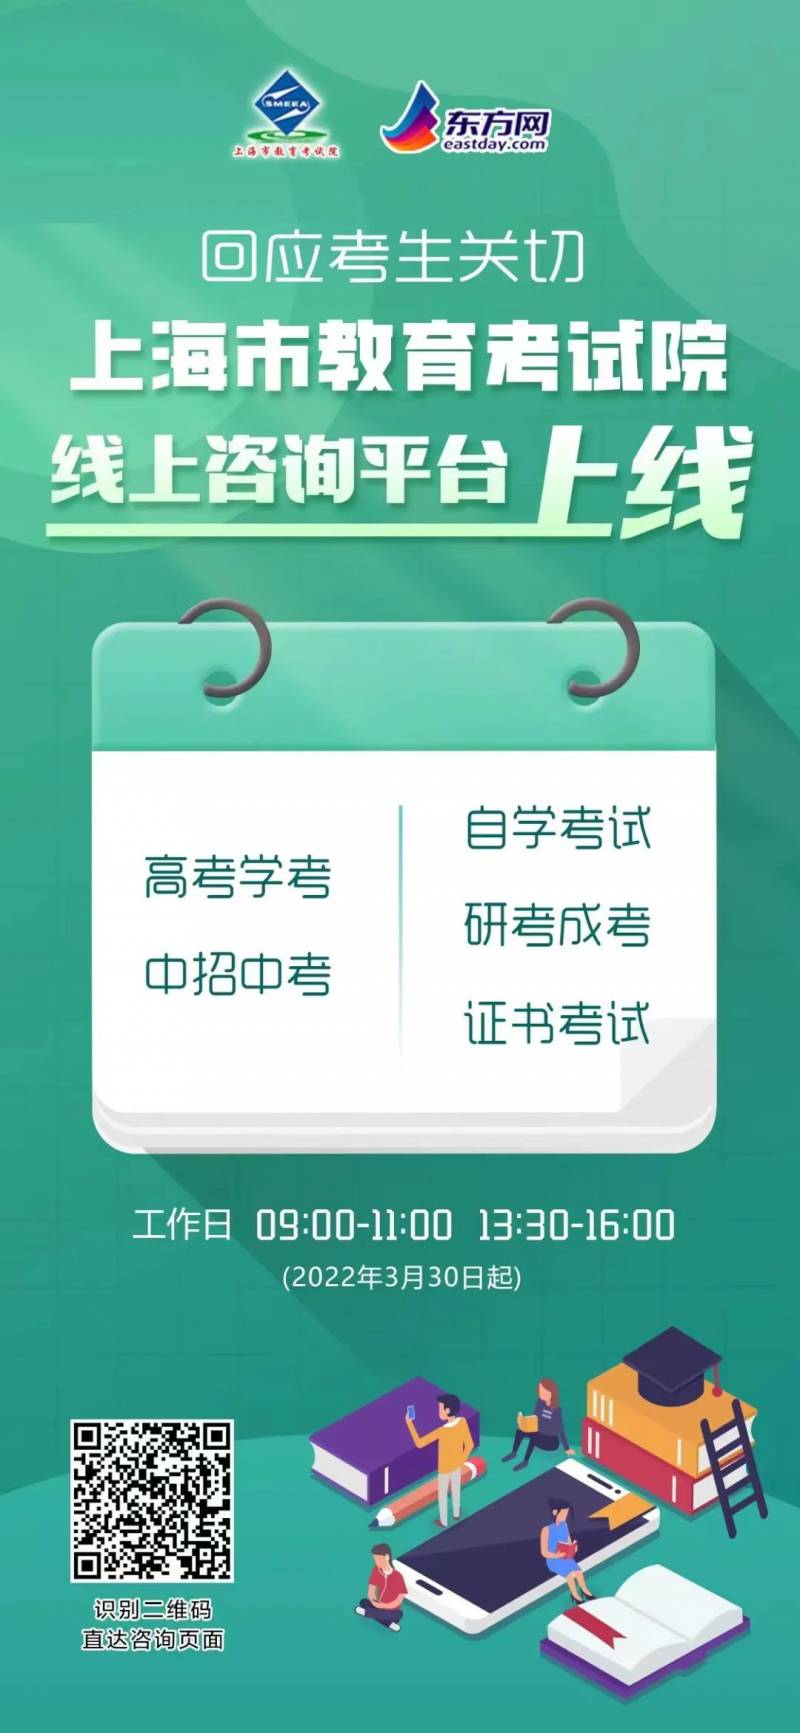 上海教育资源库网站的微博号是什么（上海教育空中课堂）